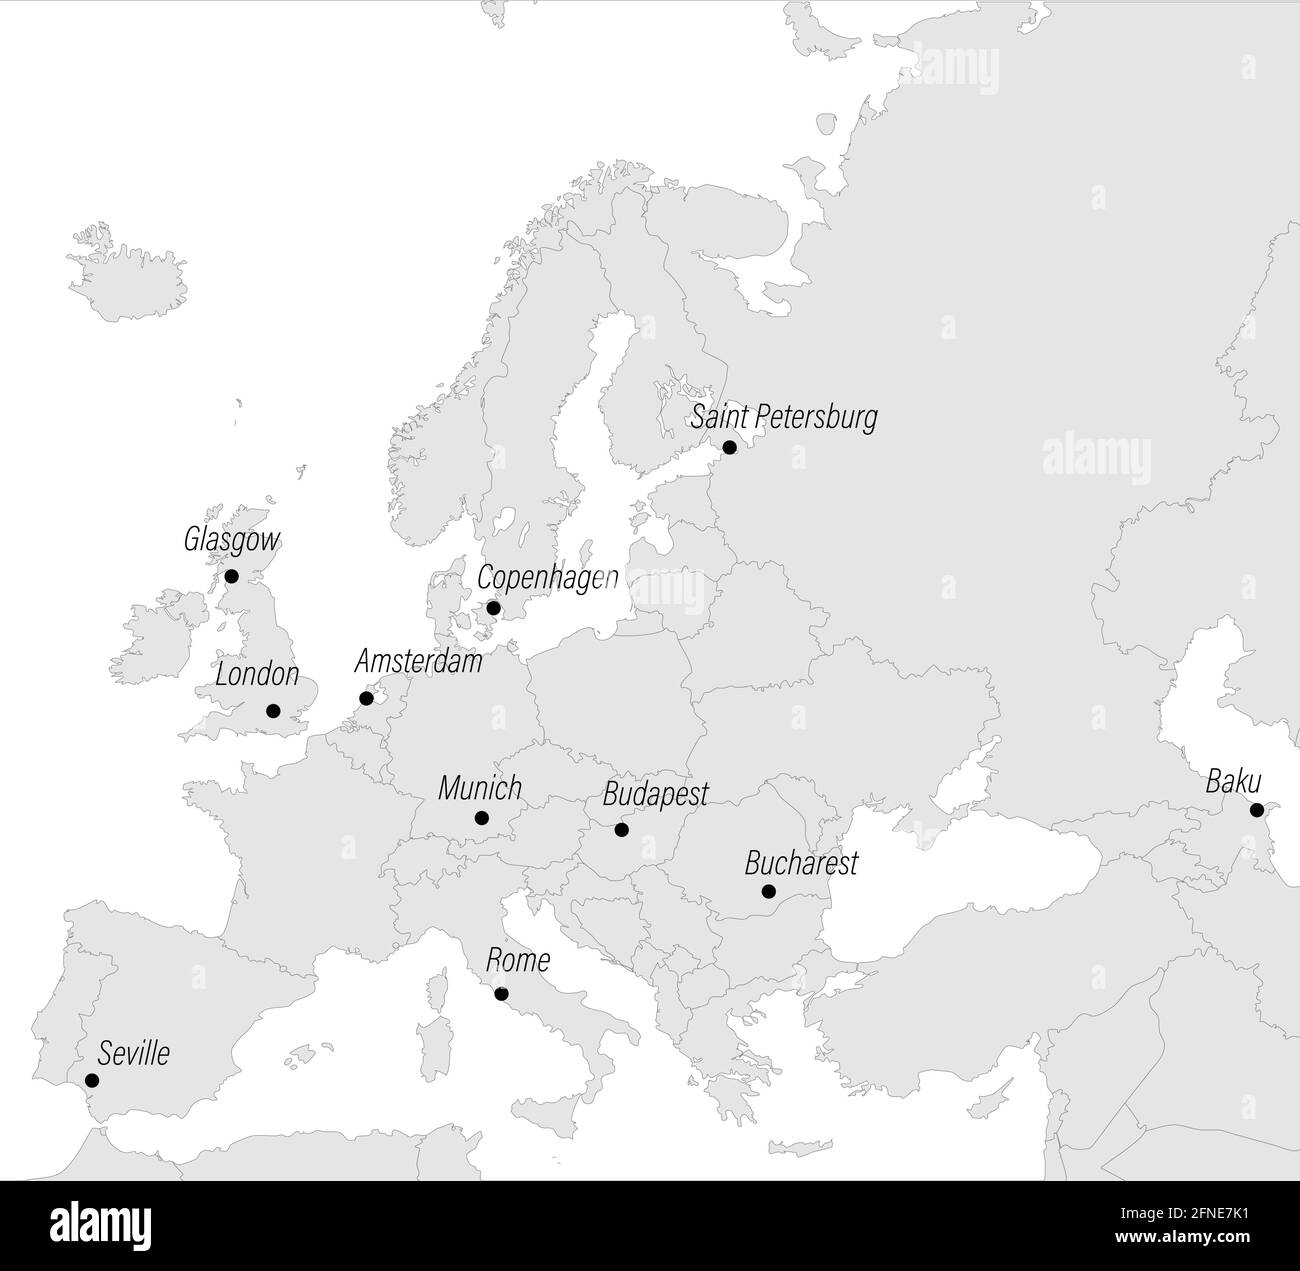 Carte de l'Europe avec les villes hôtes du tournoi européen. Illustration vectorielle Illustration de Vecteur